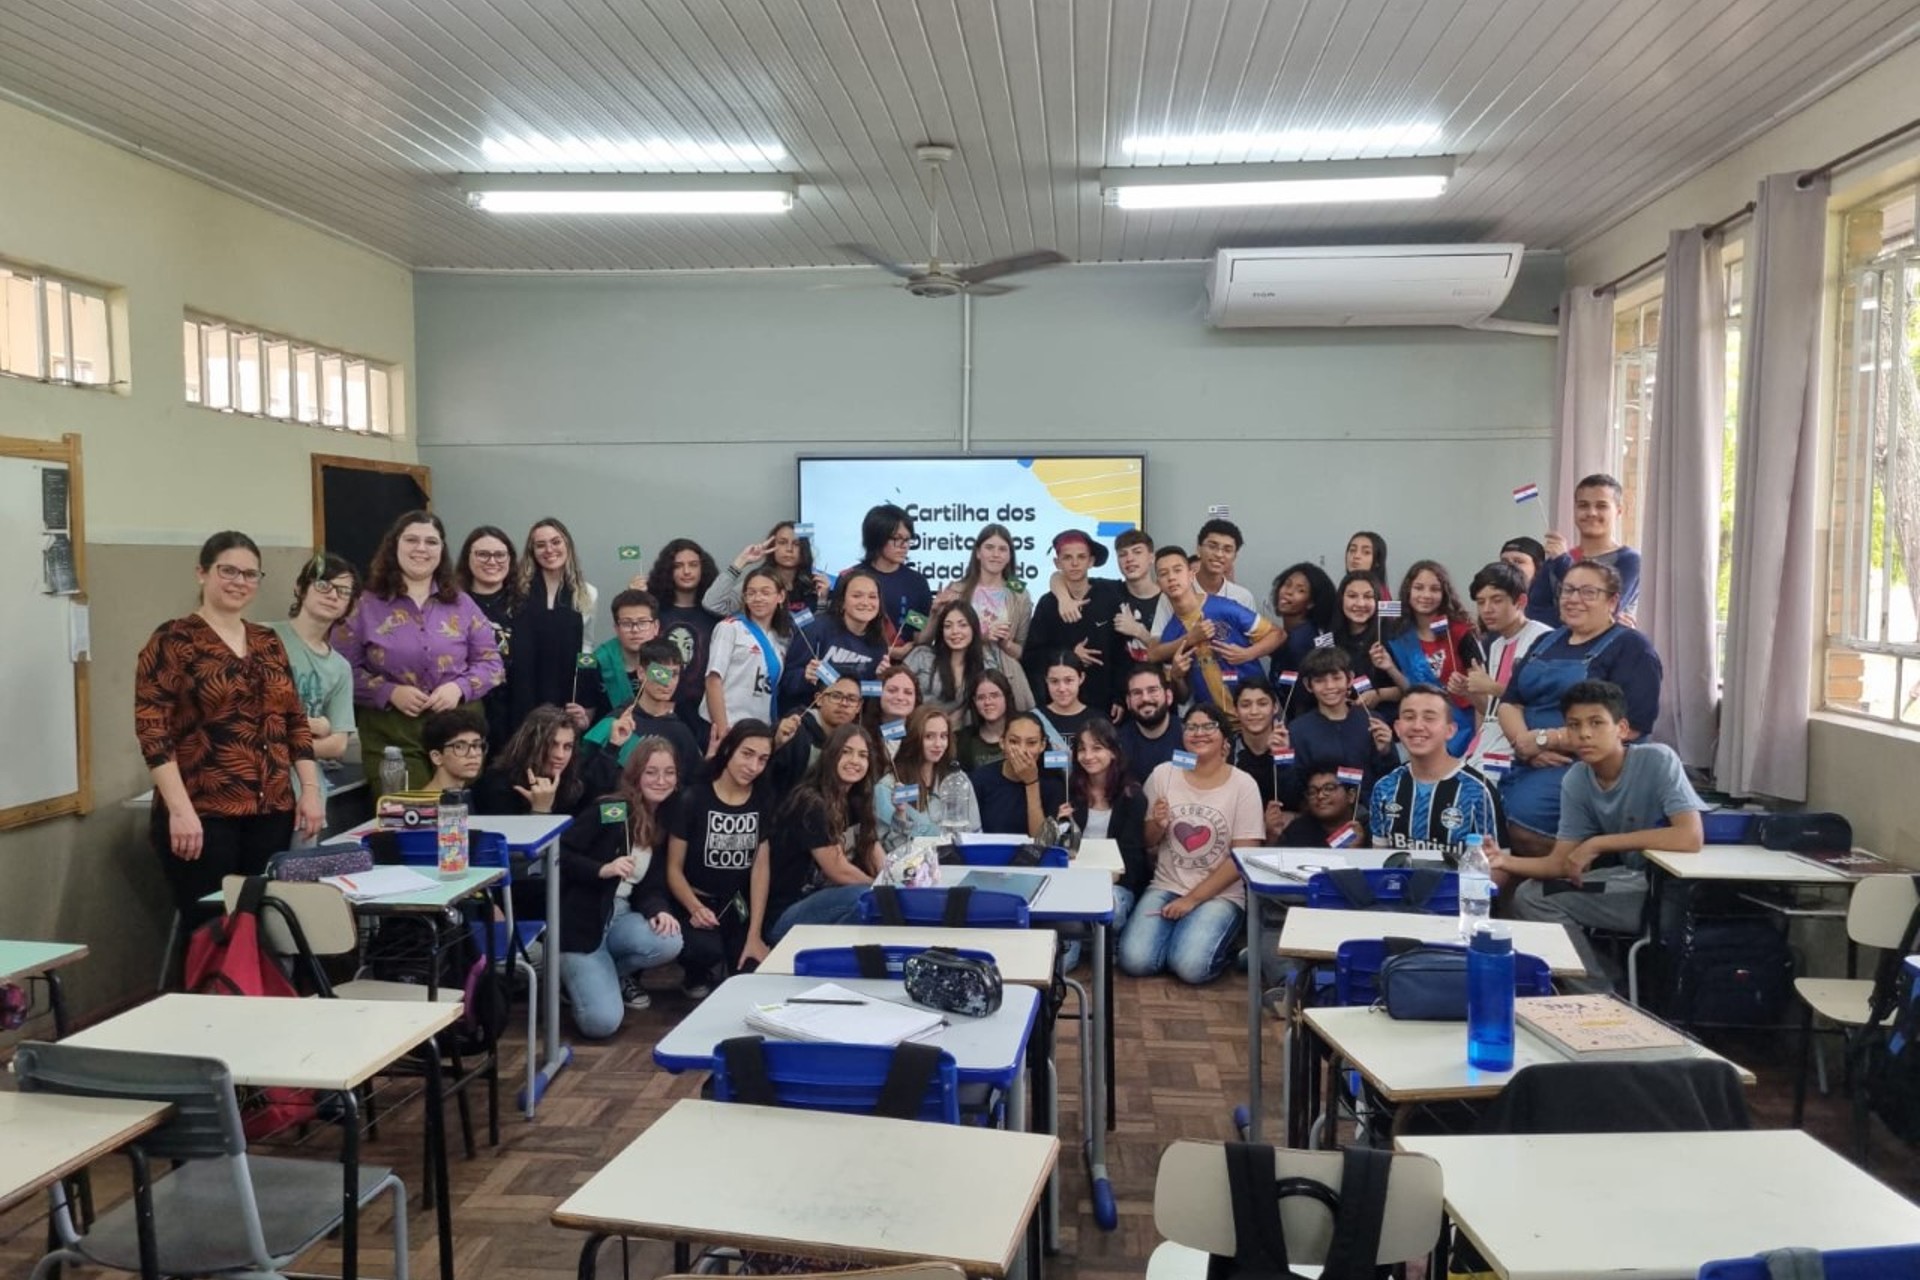 Divulgação da Cartilha dos Direitos dos Cidadãos do Mercosul nas escolas de São Leopoldo